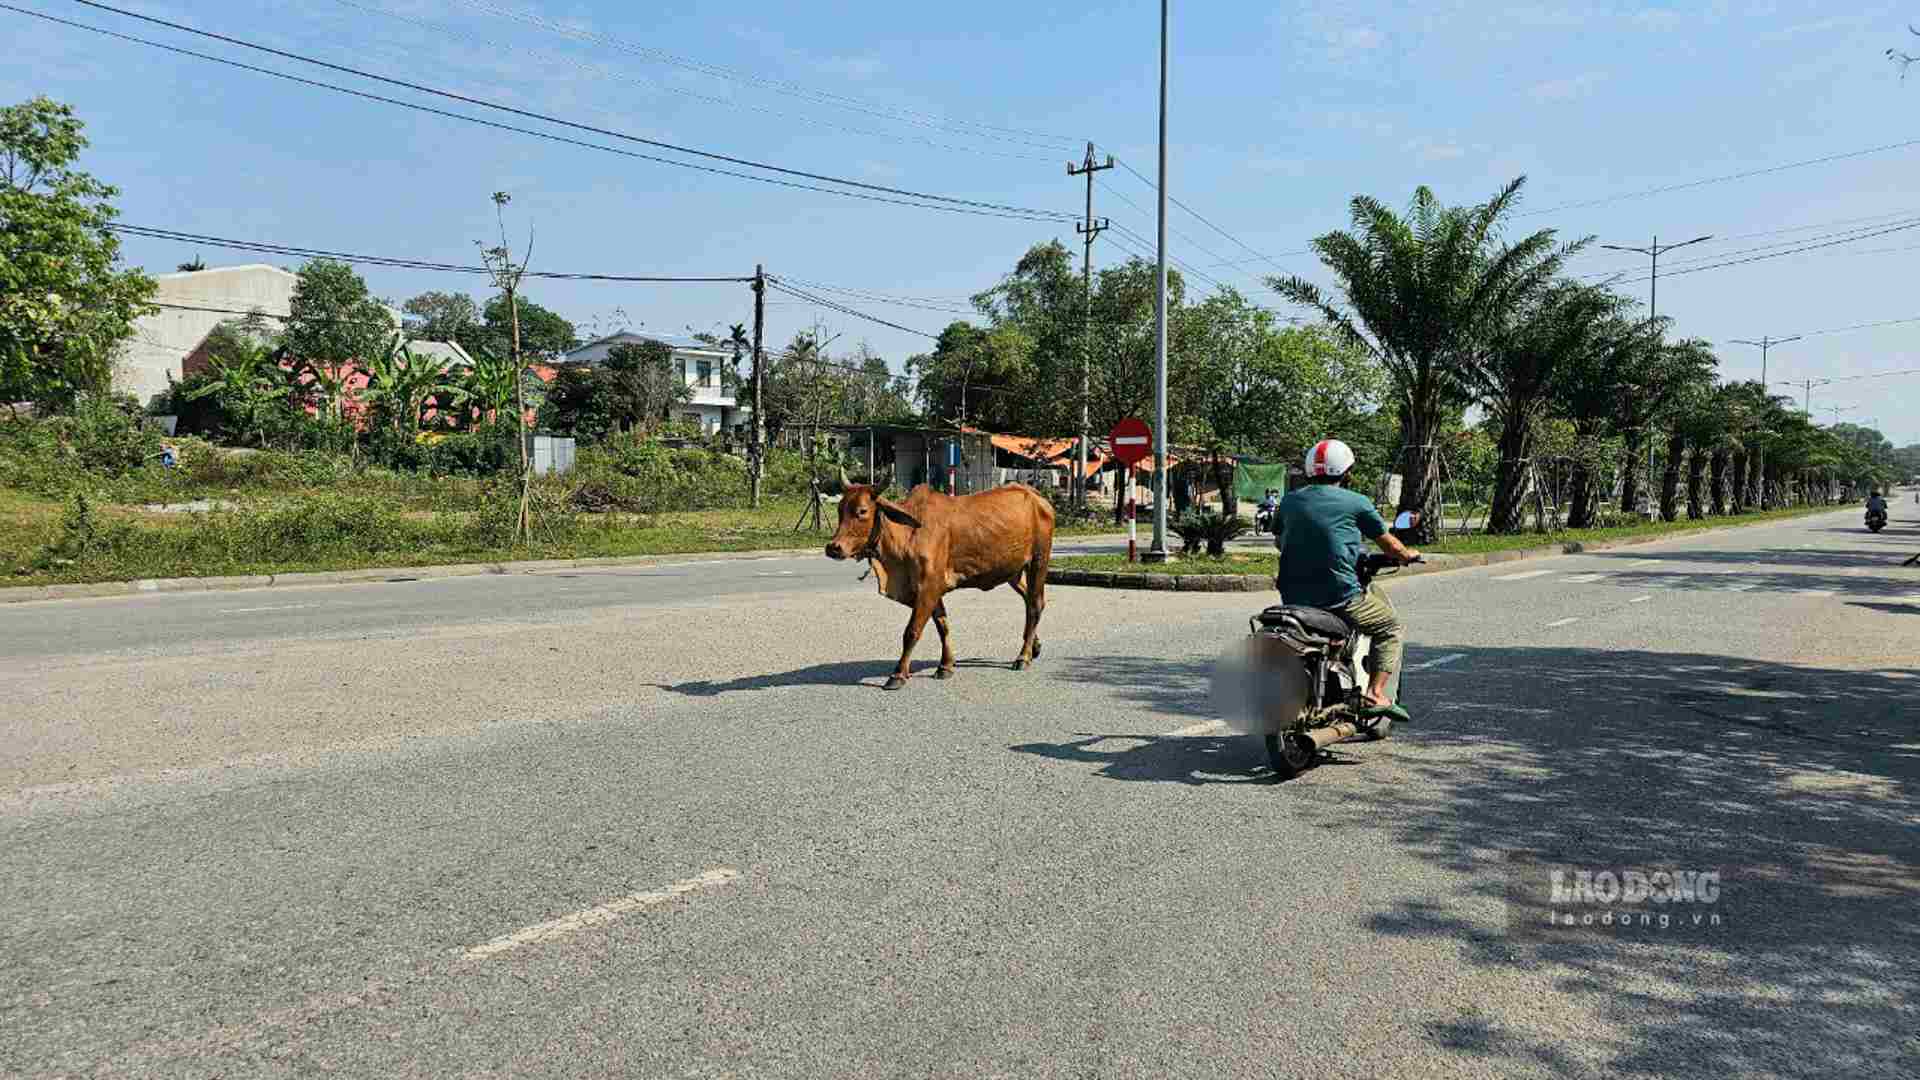 Từ bò nhỏ cho đến những con bò trưởng thành, chúng xuất hiện khắp nơi, hai bên lề đường và ngang nhiên đi lại giữa đường, khiến người tham gia giao thông trên tuyến đường này bức xúc, lo sợ.